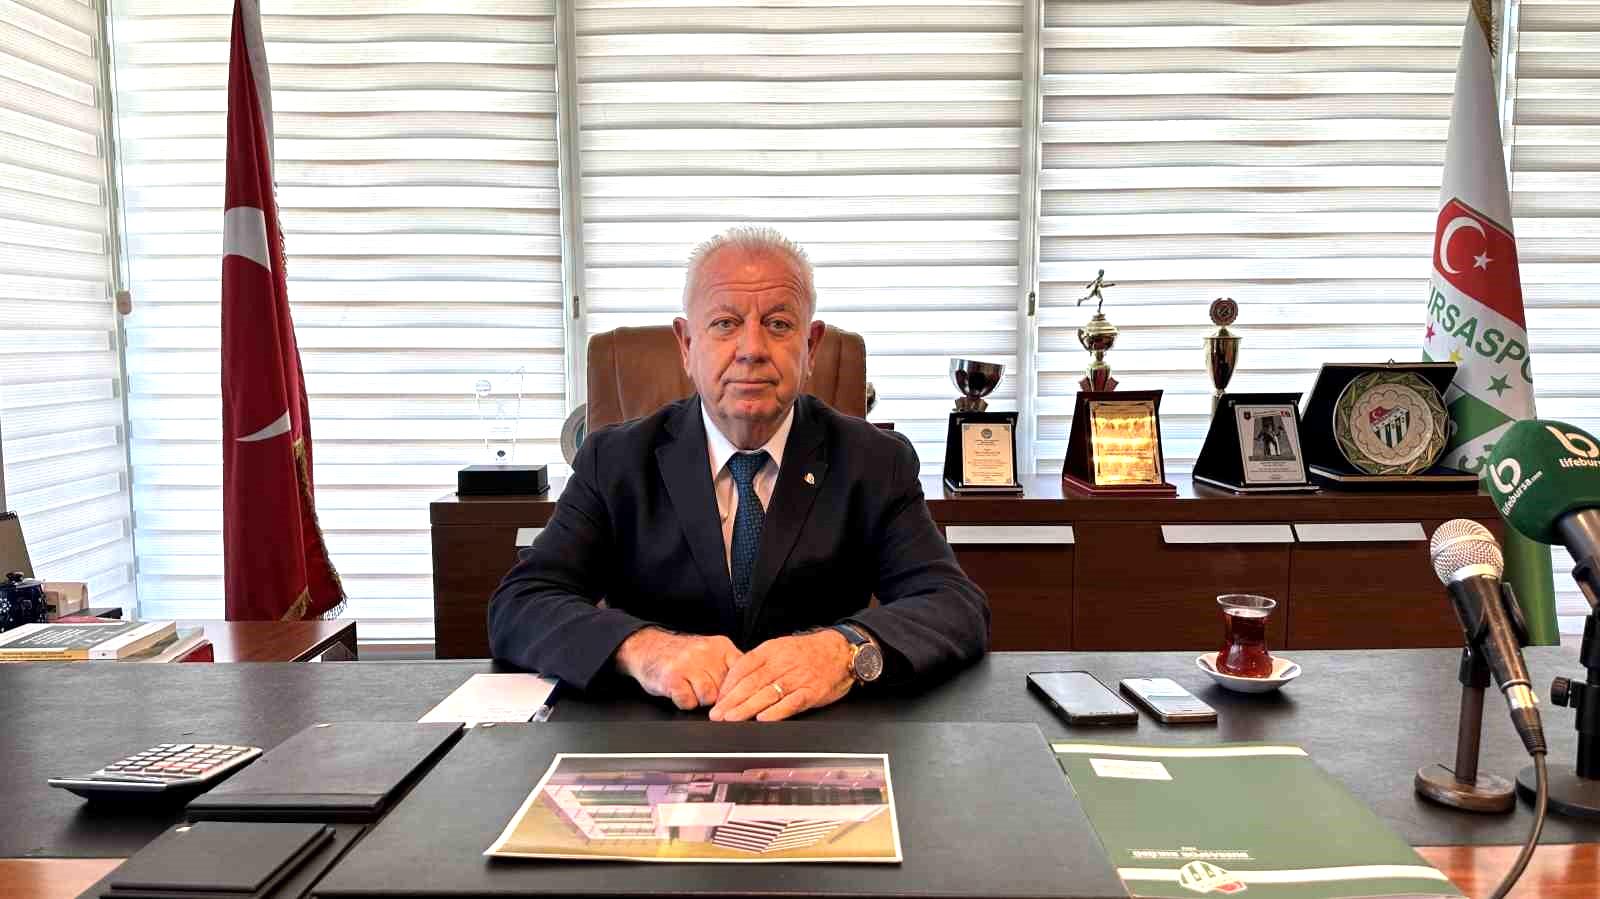 Bursaspor Divan Kurulu Başkanı Galip Sakder: “Hukuki mütalaaya başvurulmuştur”